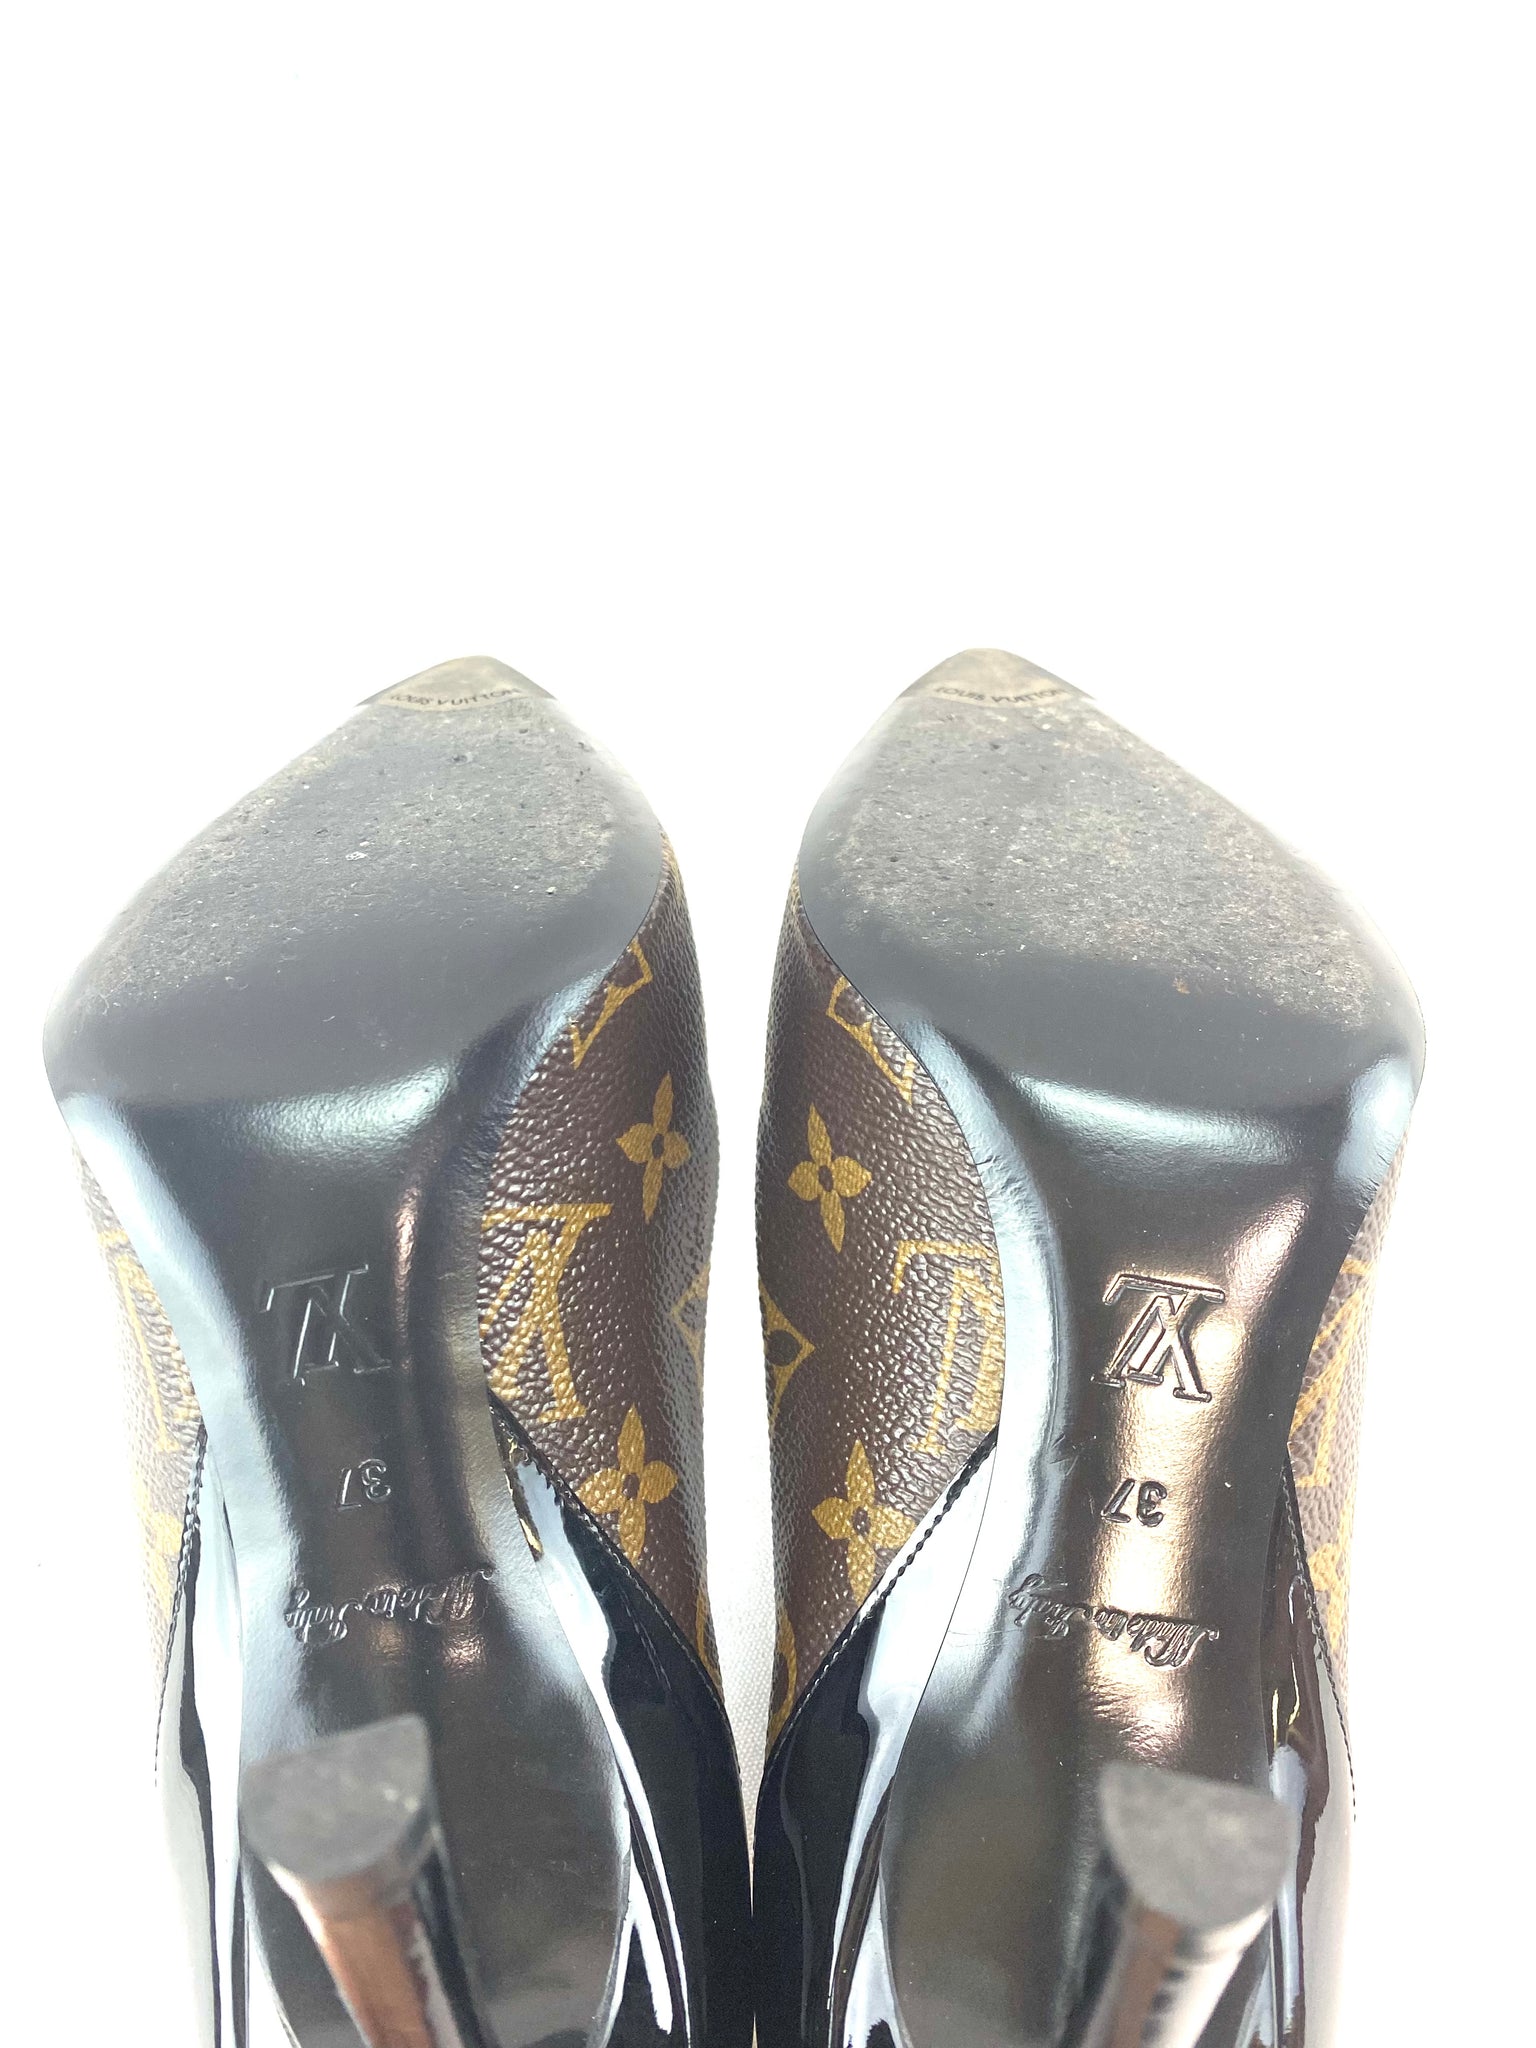 Louis Vuitton High Heels – thankunext.us